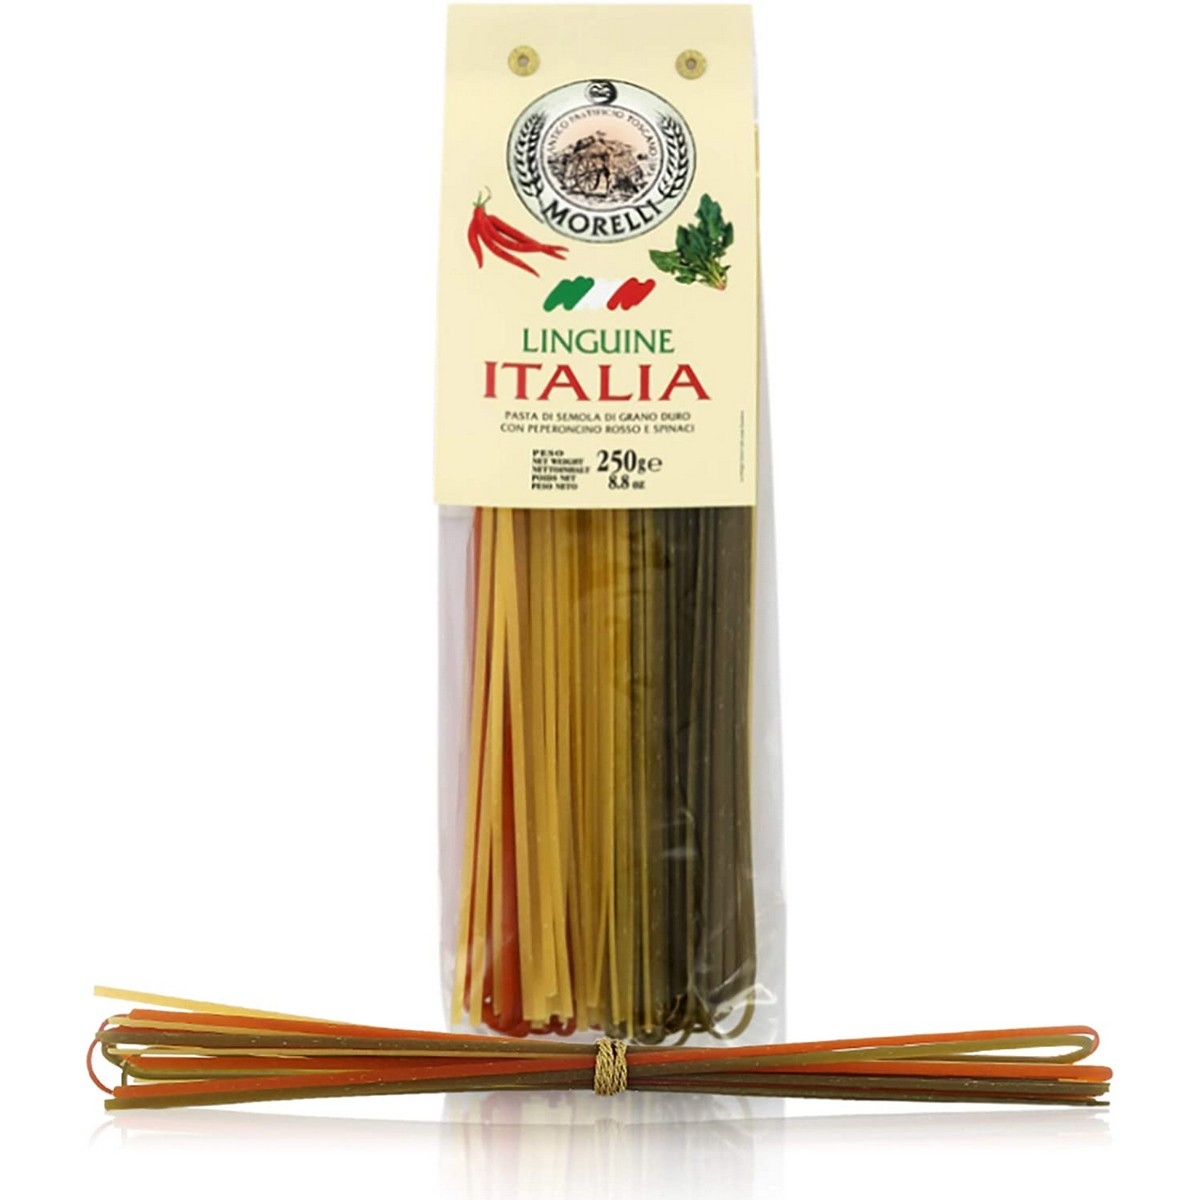 Antico Pastificio Morelli - Mehrfarbig - Italien - Linguine - 250 g